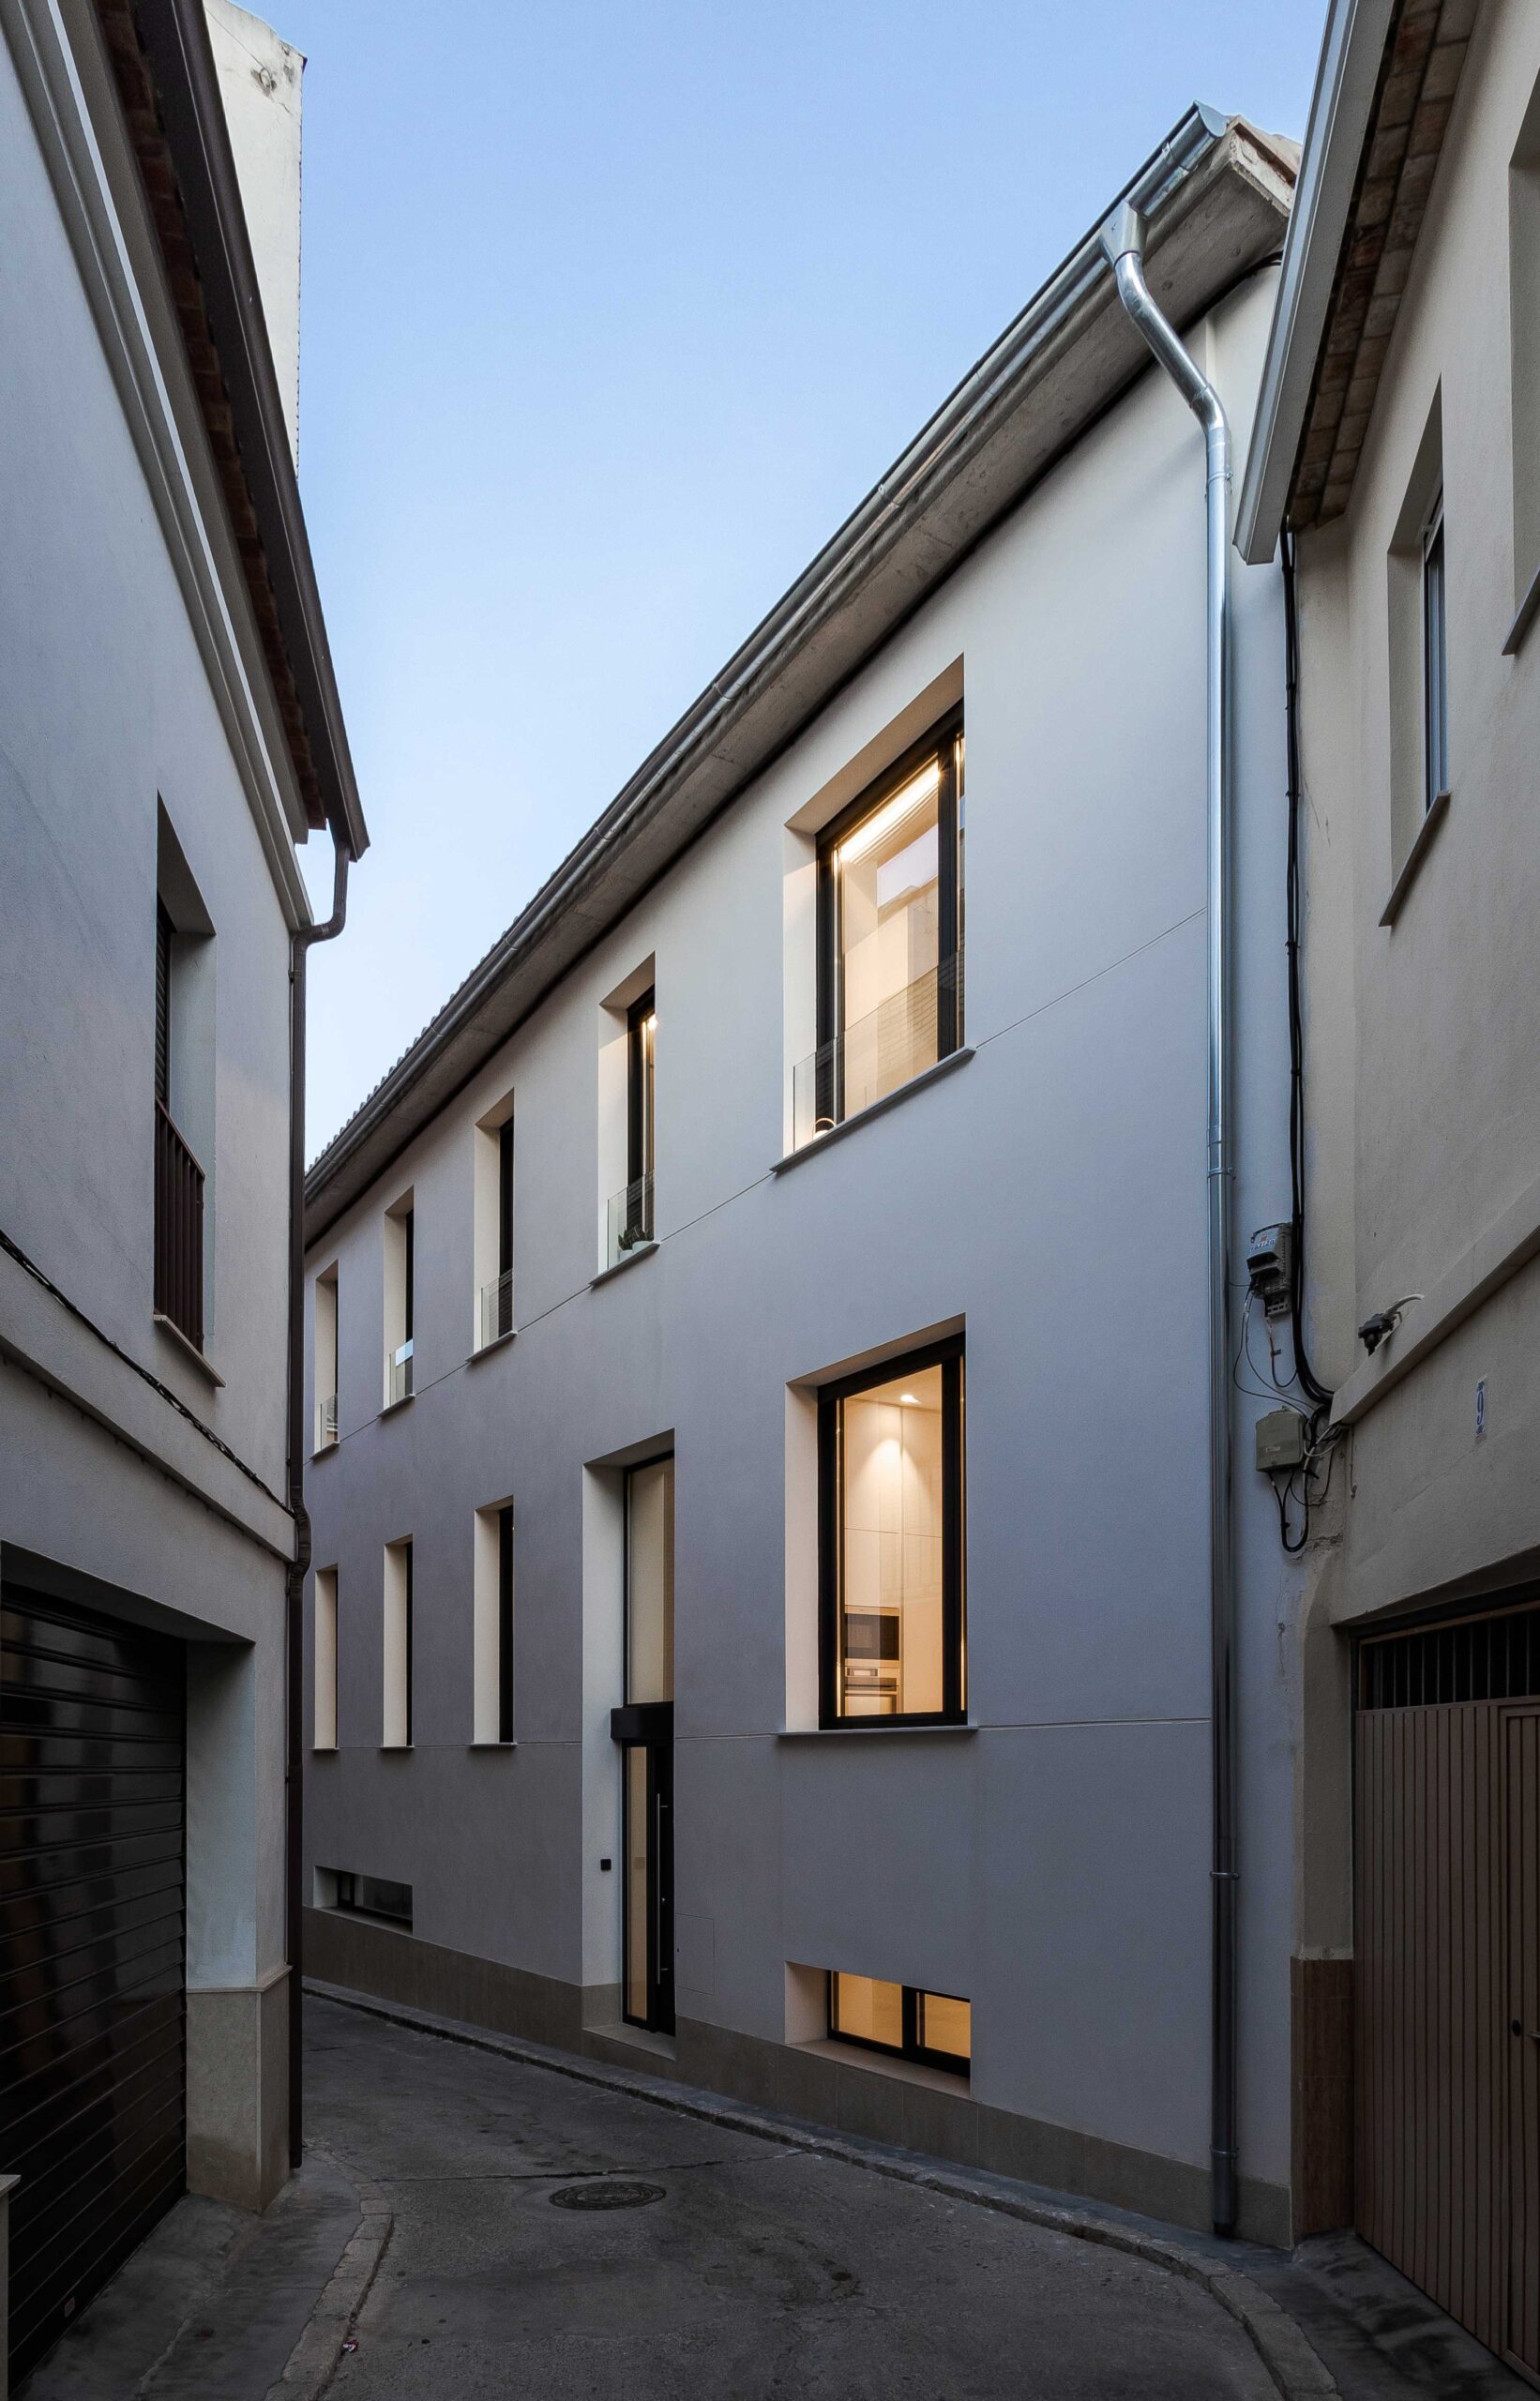 Casa Cin. Vivienda unifamiliar entre medianeras en Llíria. Arquitectura en Llíria